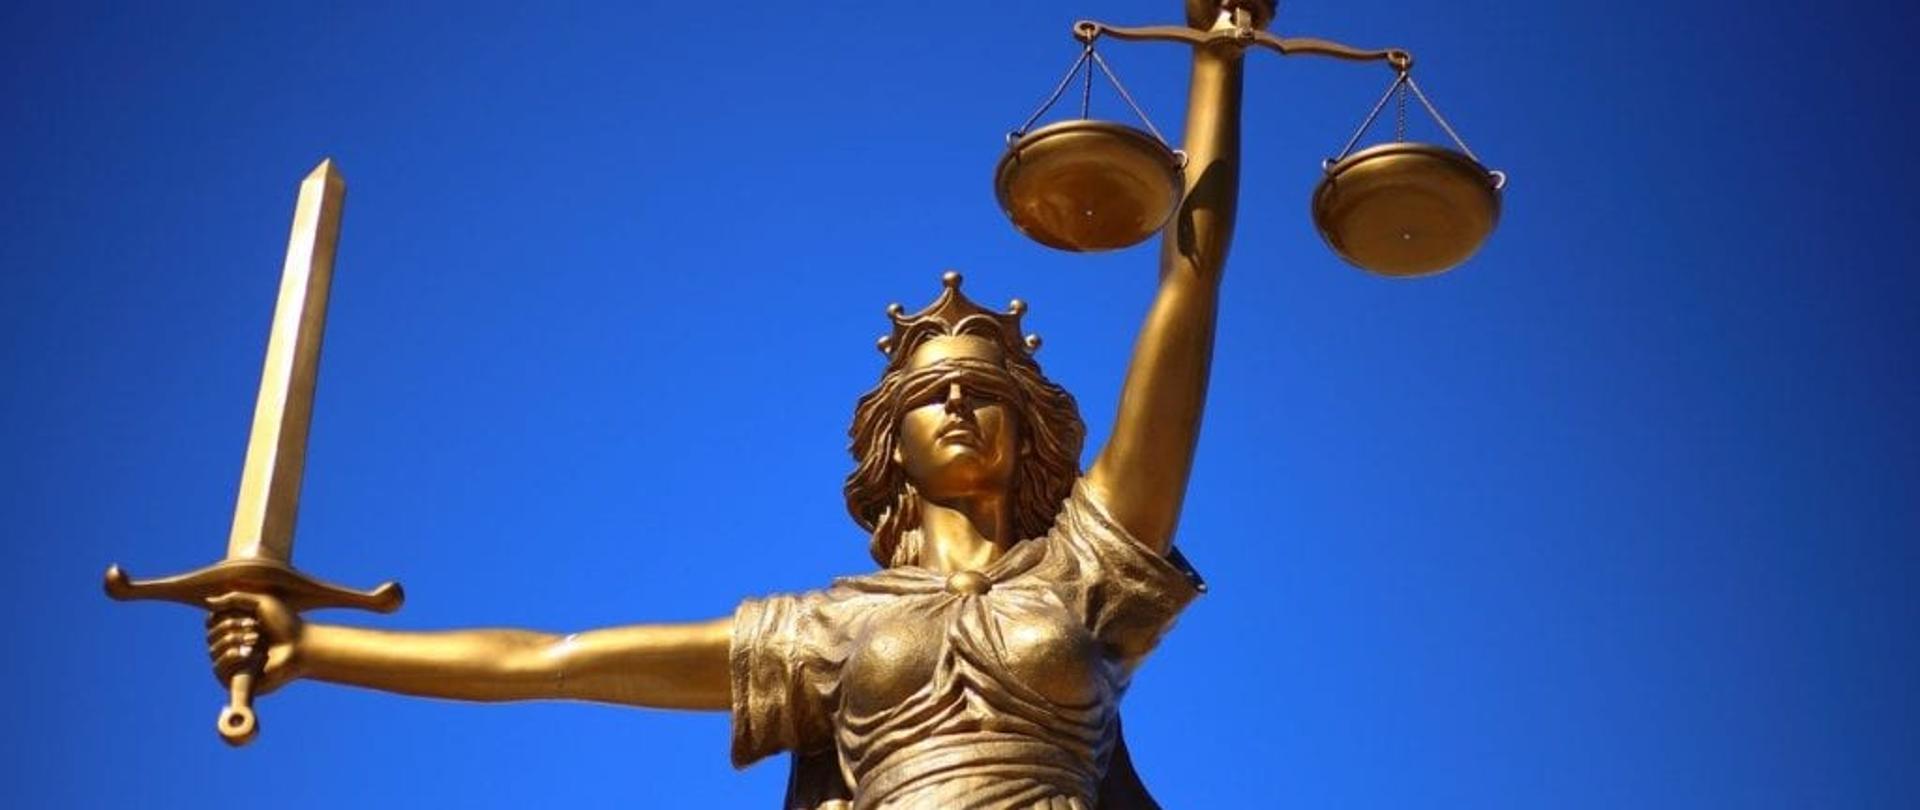 Temida - symbol prawa, sprawiedliwości i bezstronności